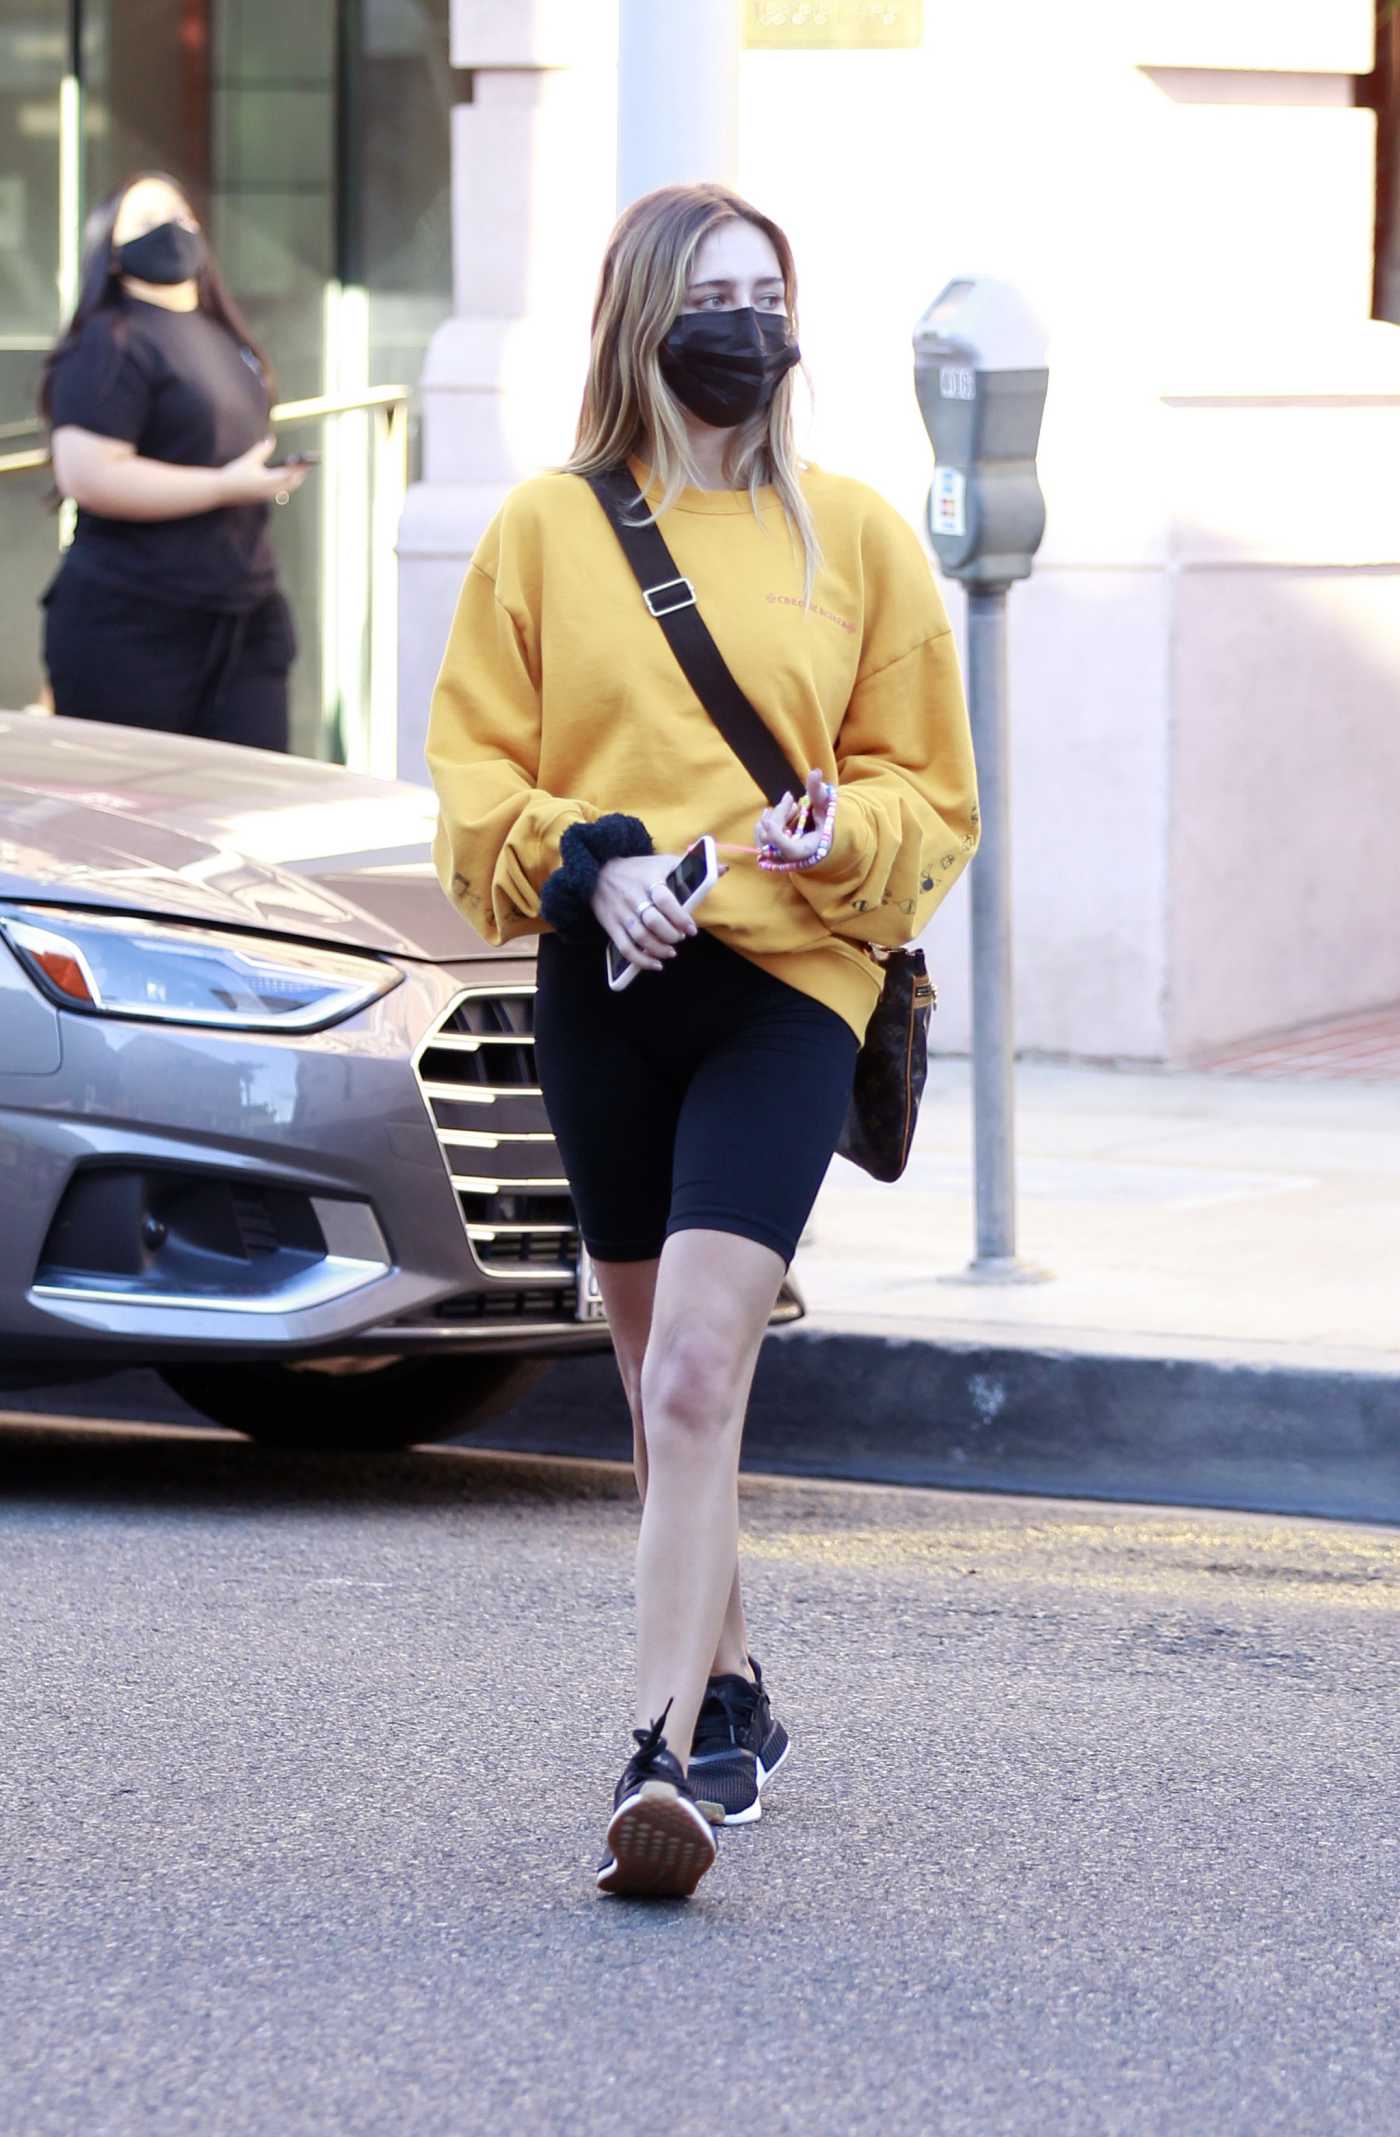 Delilah Belle Hamlin in a Yellow Sweatshirt Goes Shopping in Los Angeles 01/21/2021